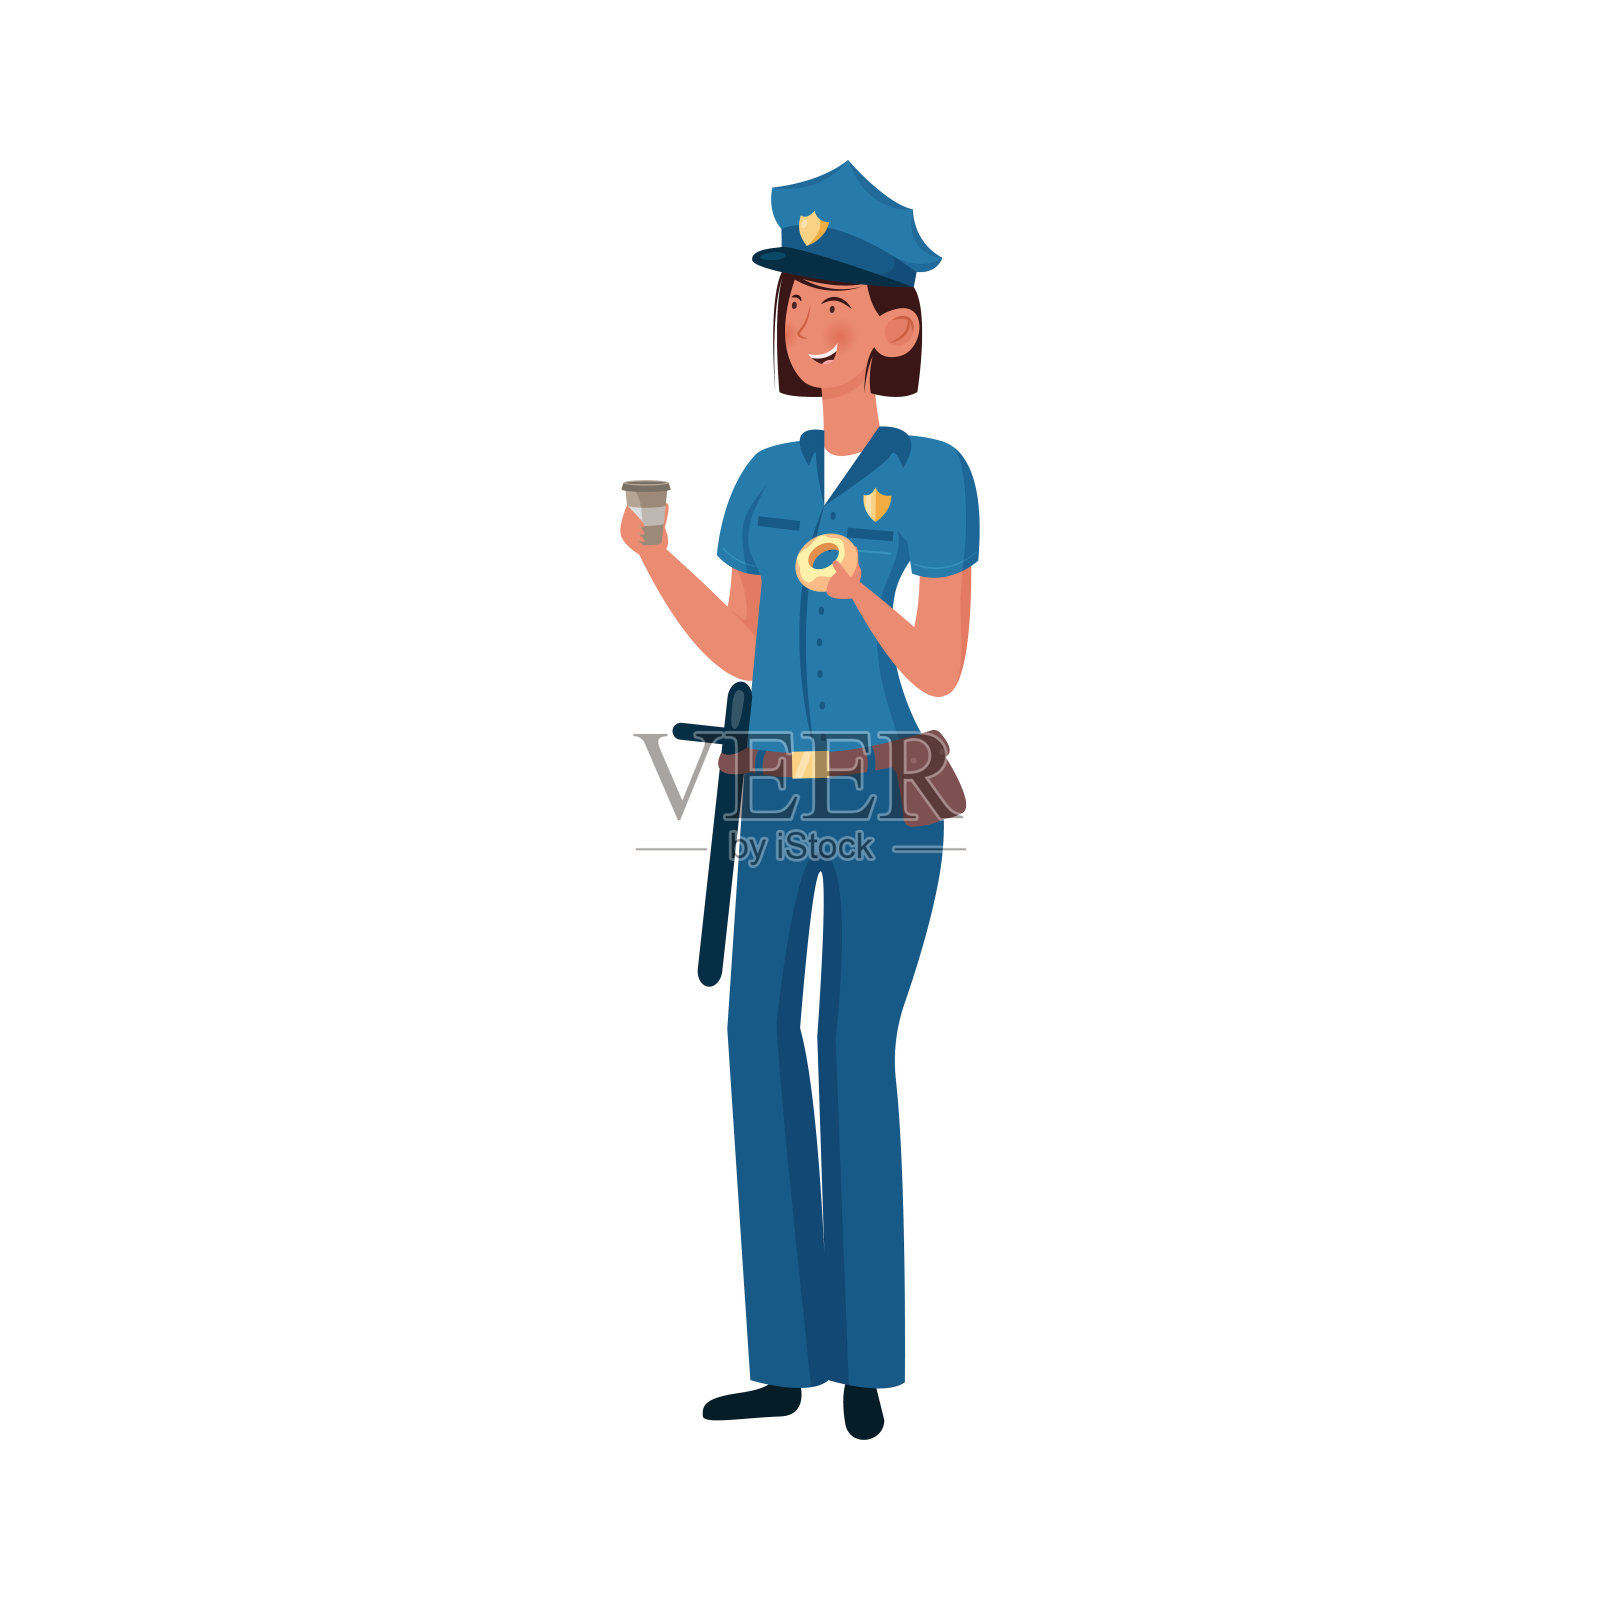 一名身穿蓝色制服的警官正拿着一杯咖啡和甜甜圈站在那里。矢量插图上的白色背景。设计元素图片